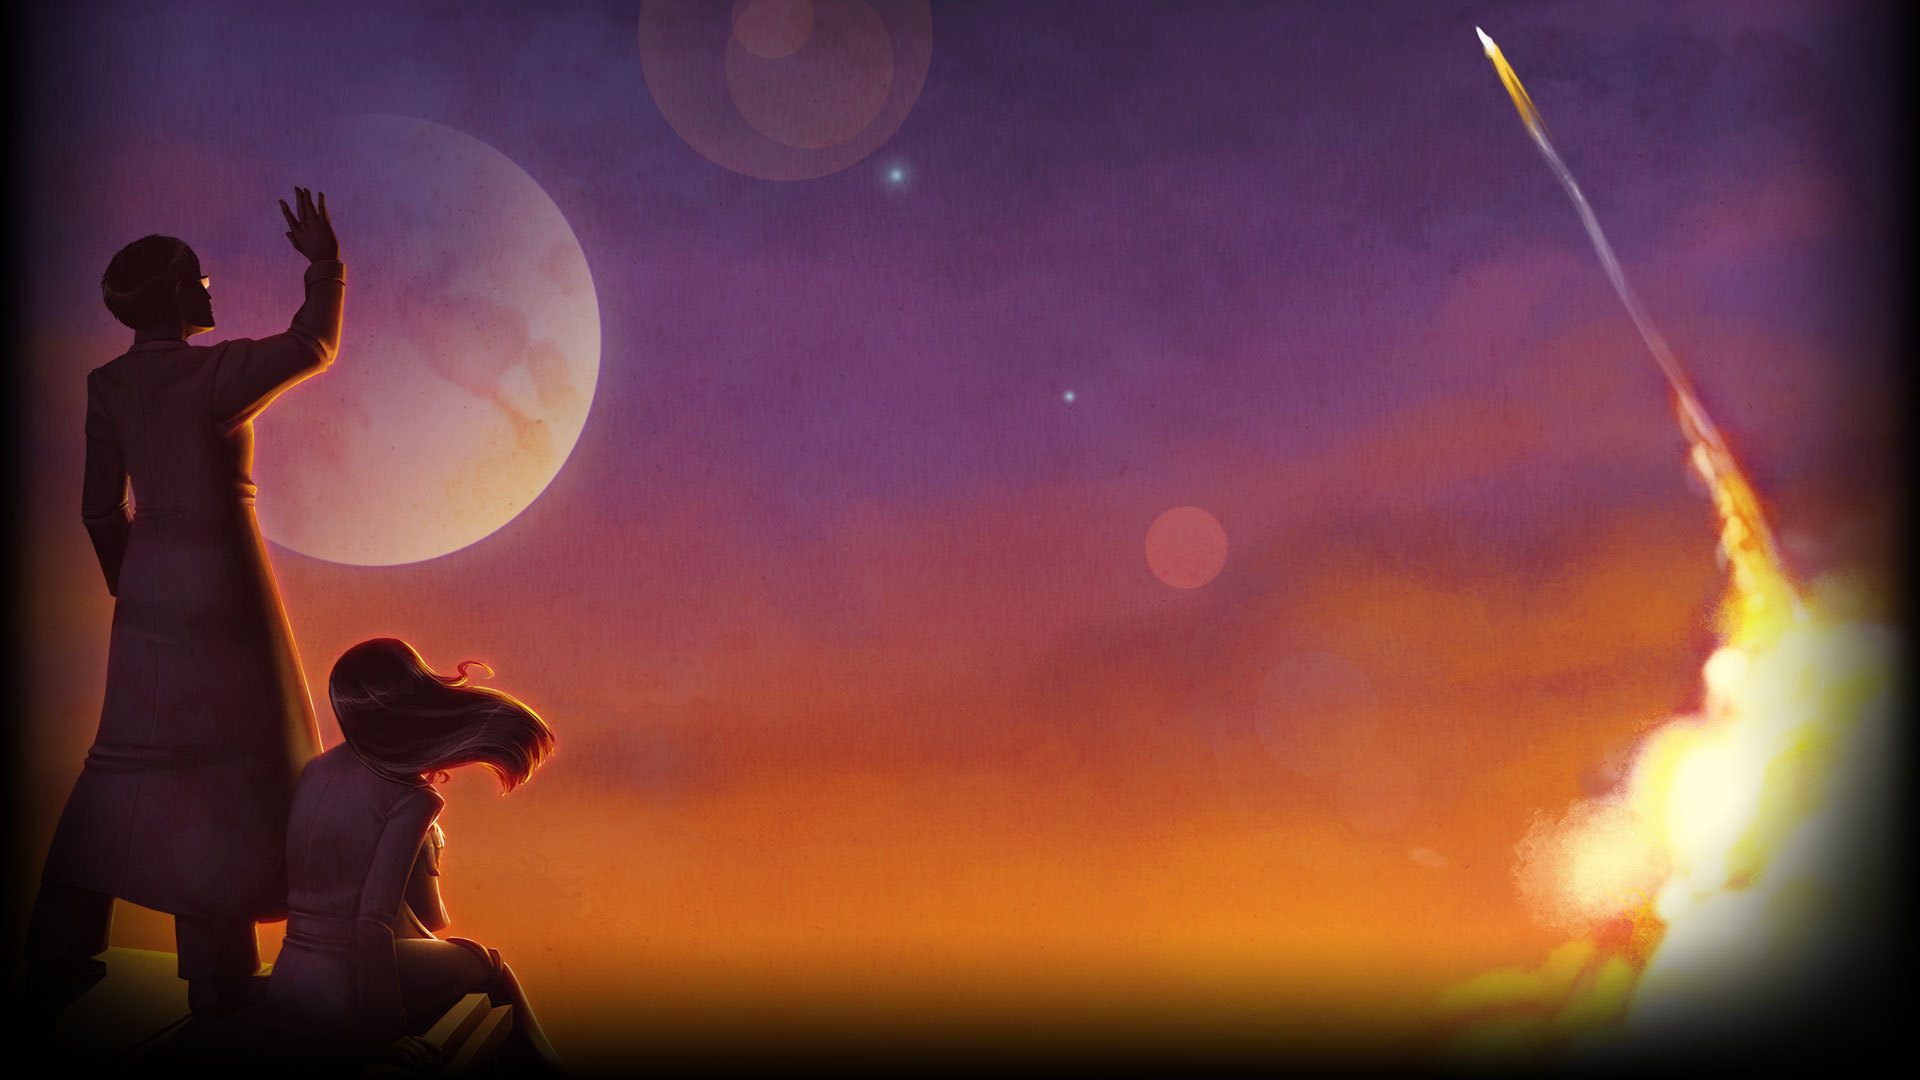 To The Moon - một trong những trò chơi đầy cảm xúc và tuyệt vời nhất mọi thời đại. Bạn sẽ được trải nghiệm một câu chuyện cảm động và đáng nhớ, và cùng nhân vật chính khám phá những điều kỳ diệu của vũ trụ. Hãy tìm hiểu hình ảnh liên quan để thưởng thức trò chơi đầy cảm động này.